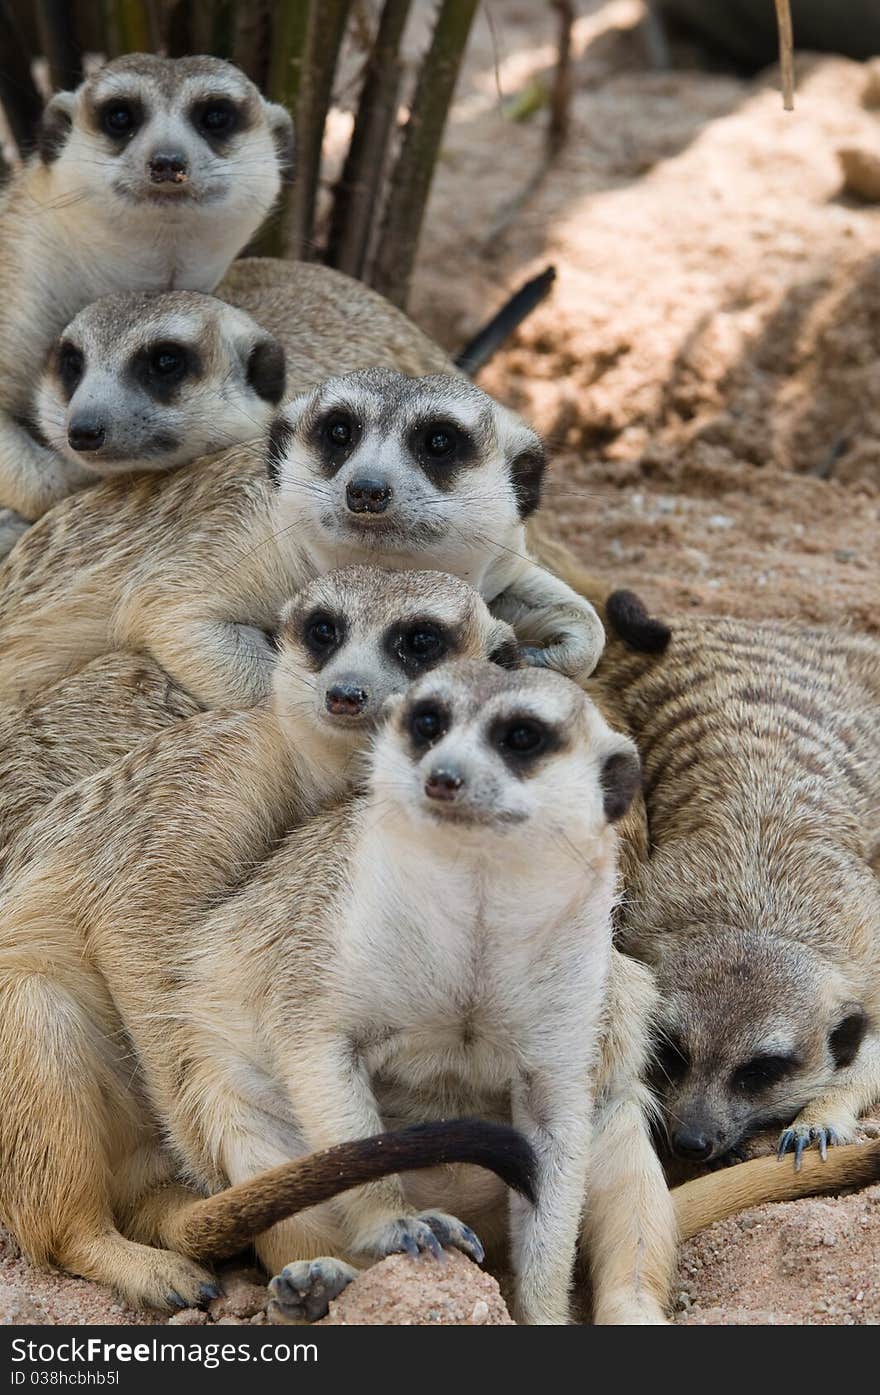 Family of Meerkats on sand. Family of Meerkats on sand